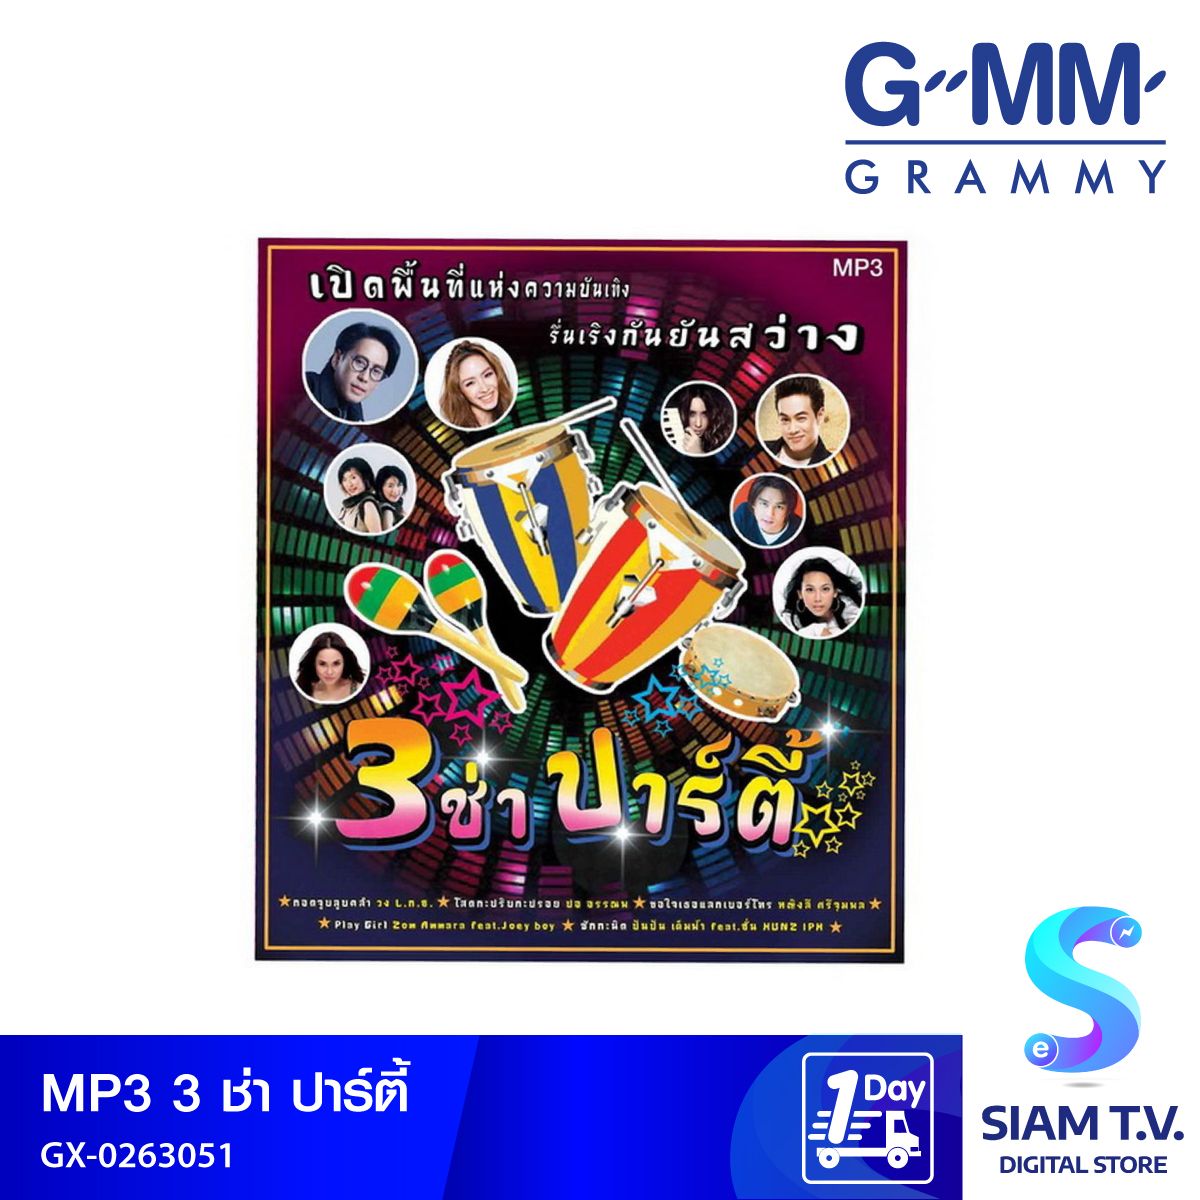 GMM GRAMMY  MP3 3ช่า ปาร์ตี้